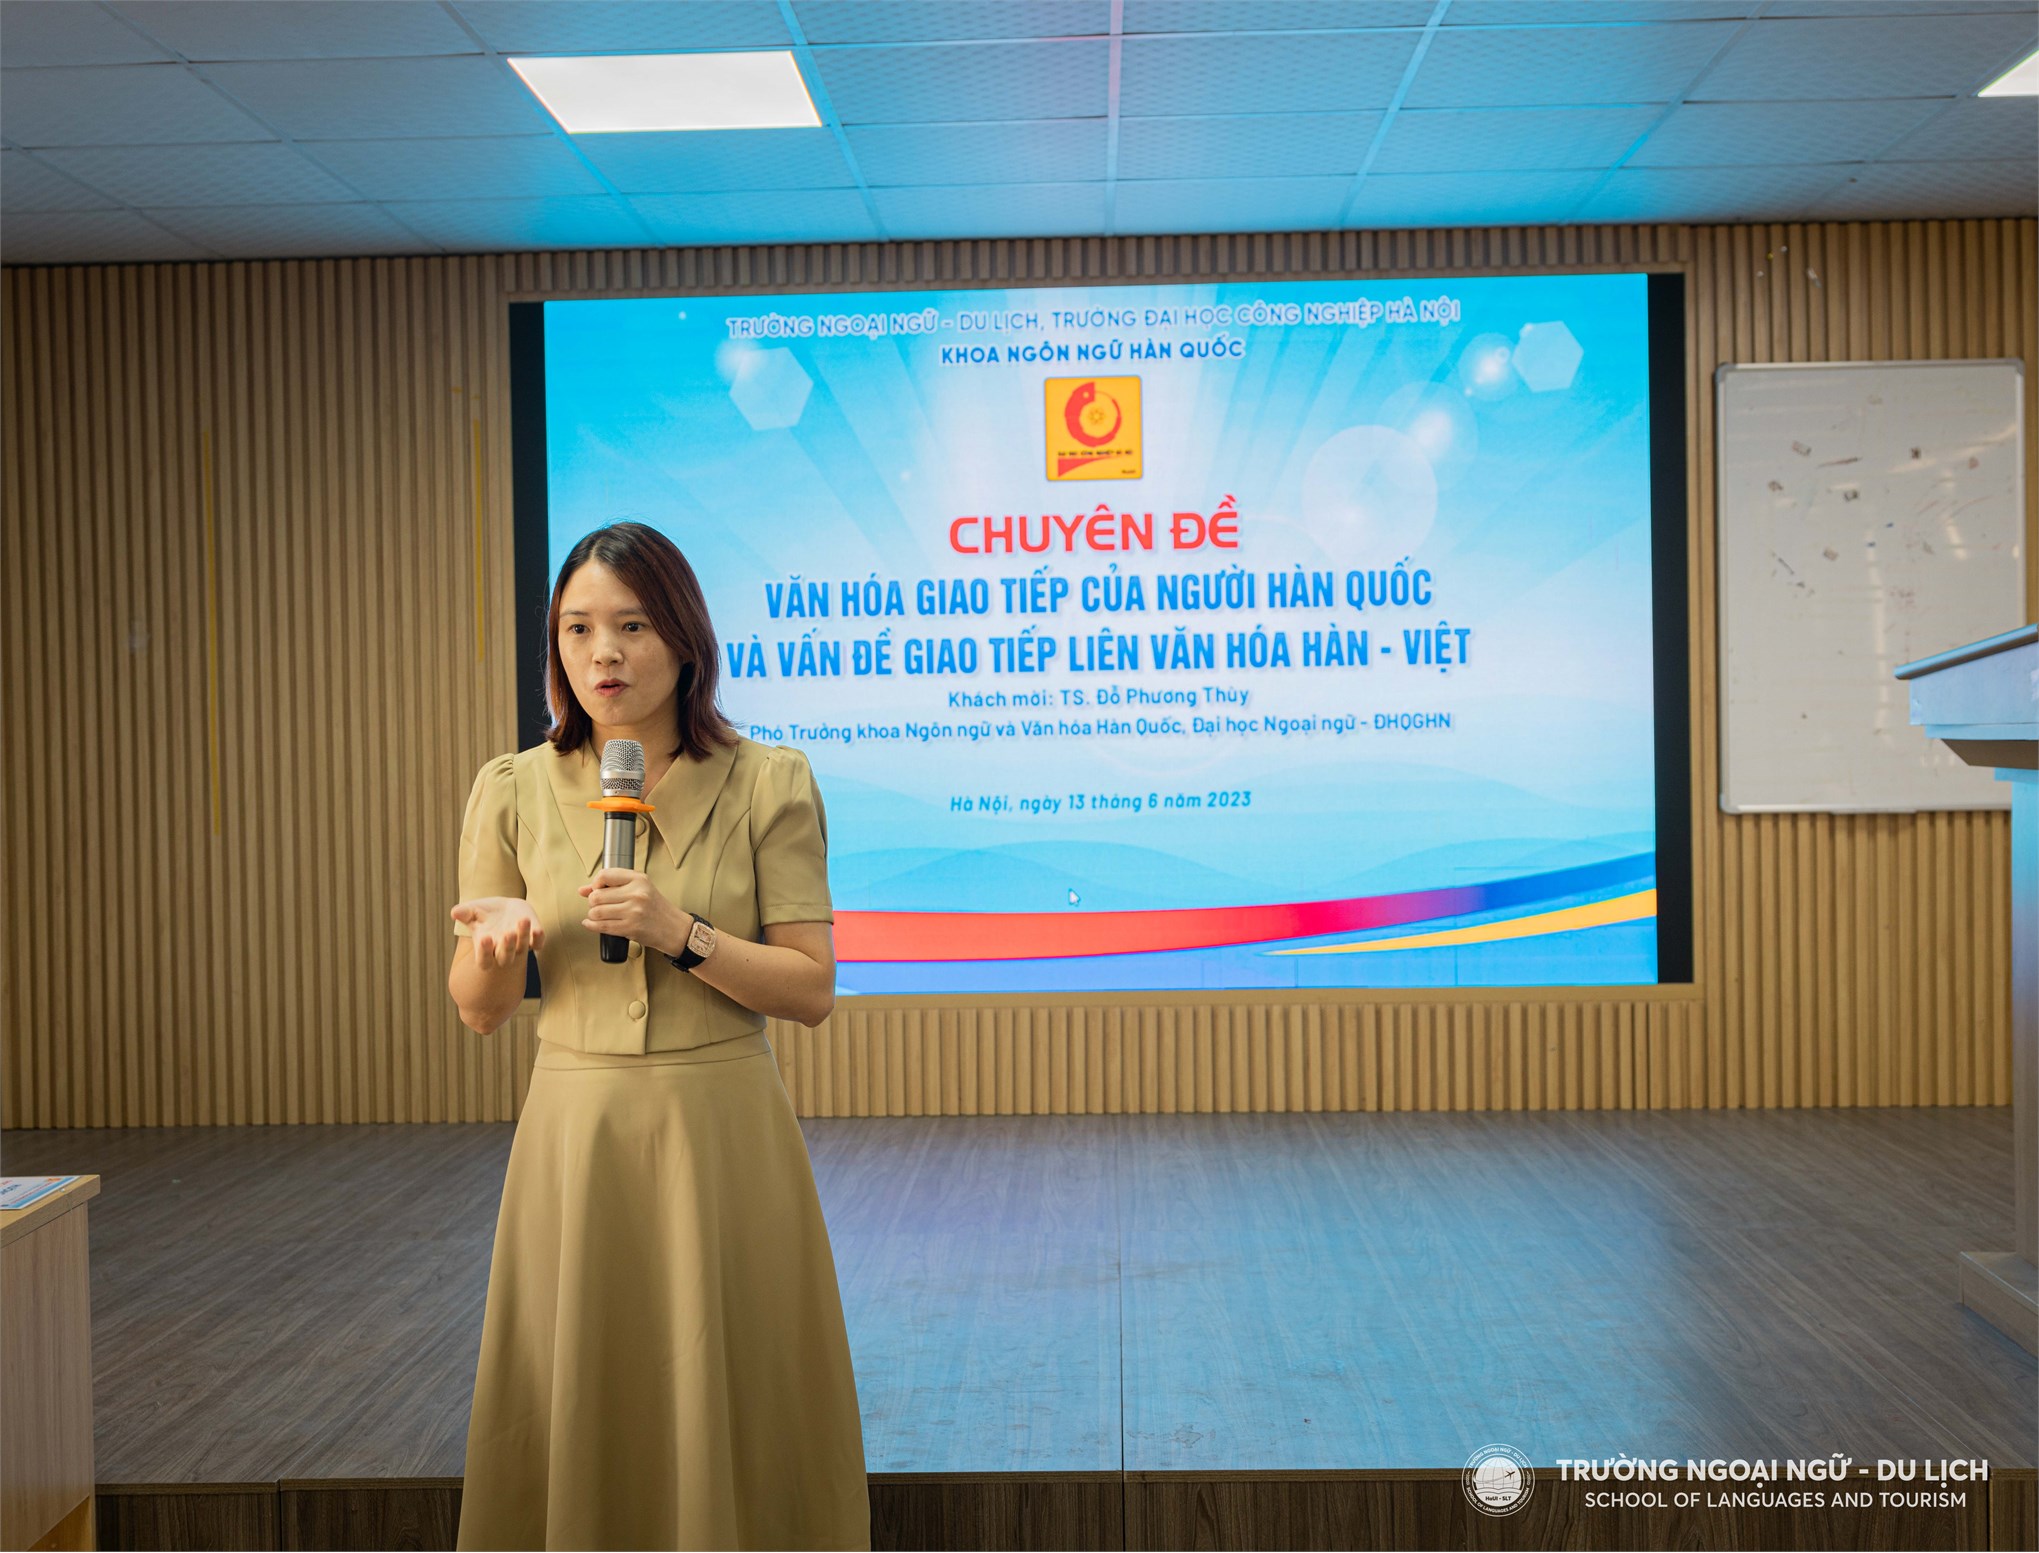 Tọa đàm chuyên đề: Văn hóa giao tiếp của người Hàn Quốc và vấn đề giao tiếp liên văn hóa Hàn – Việt